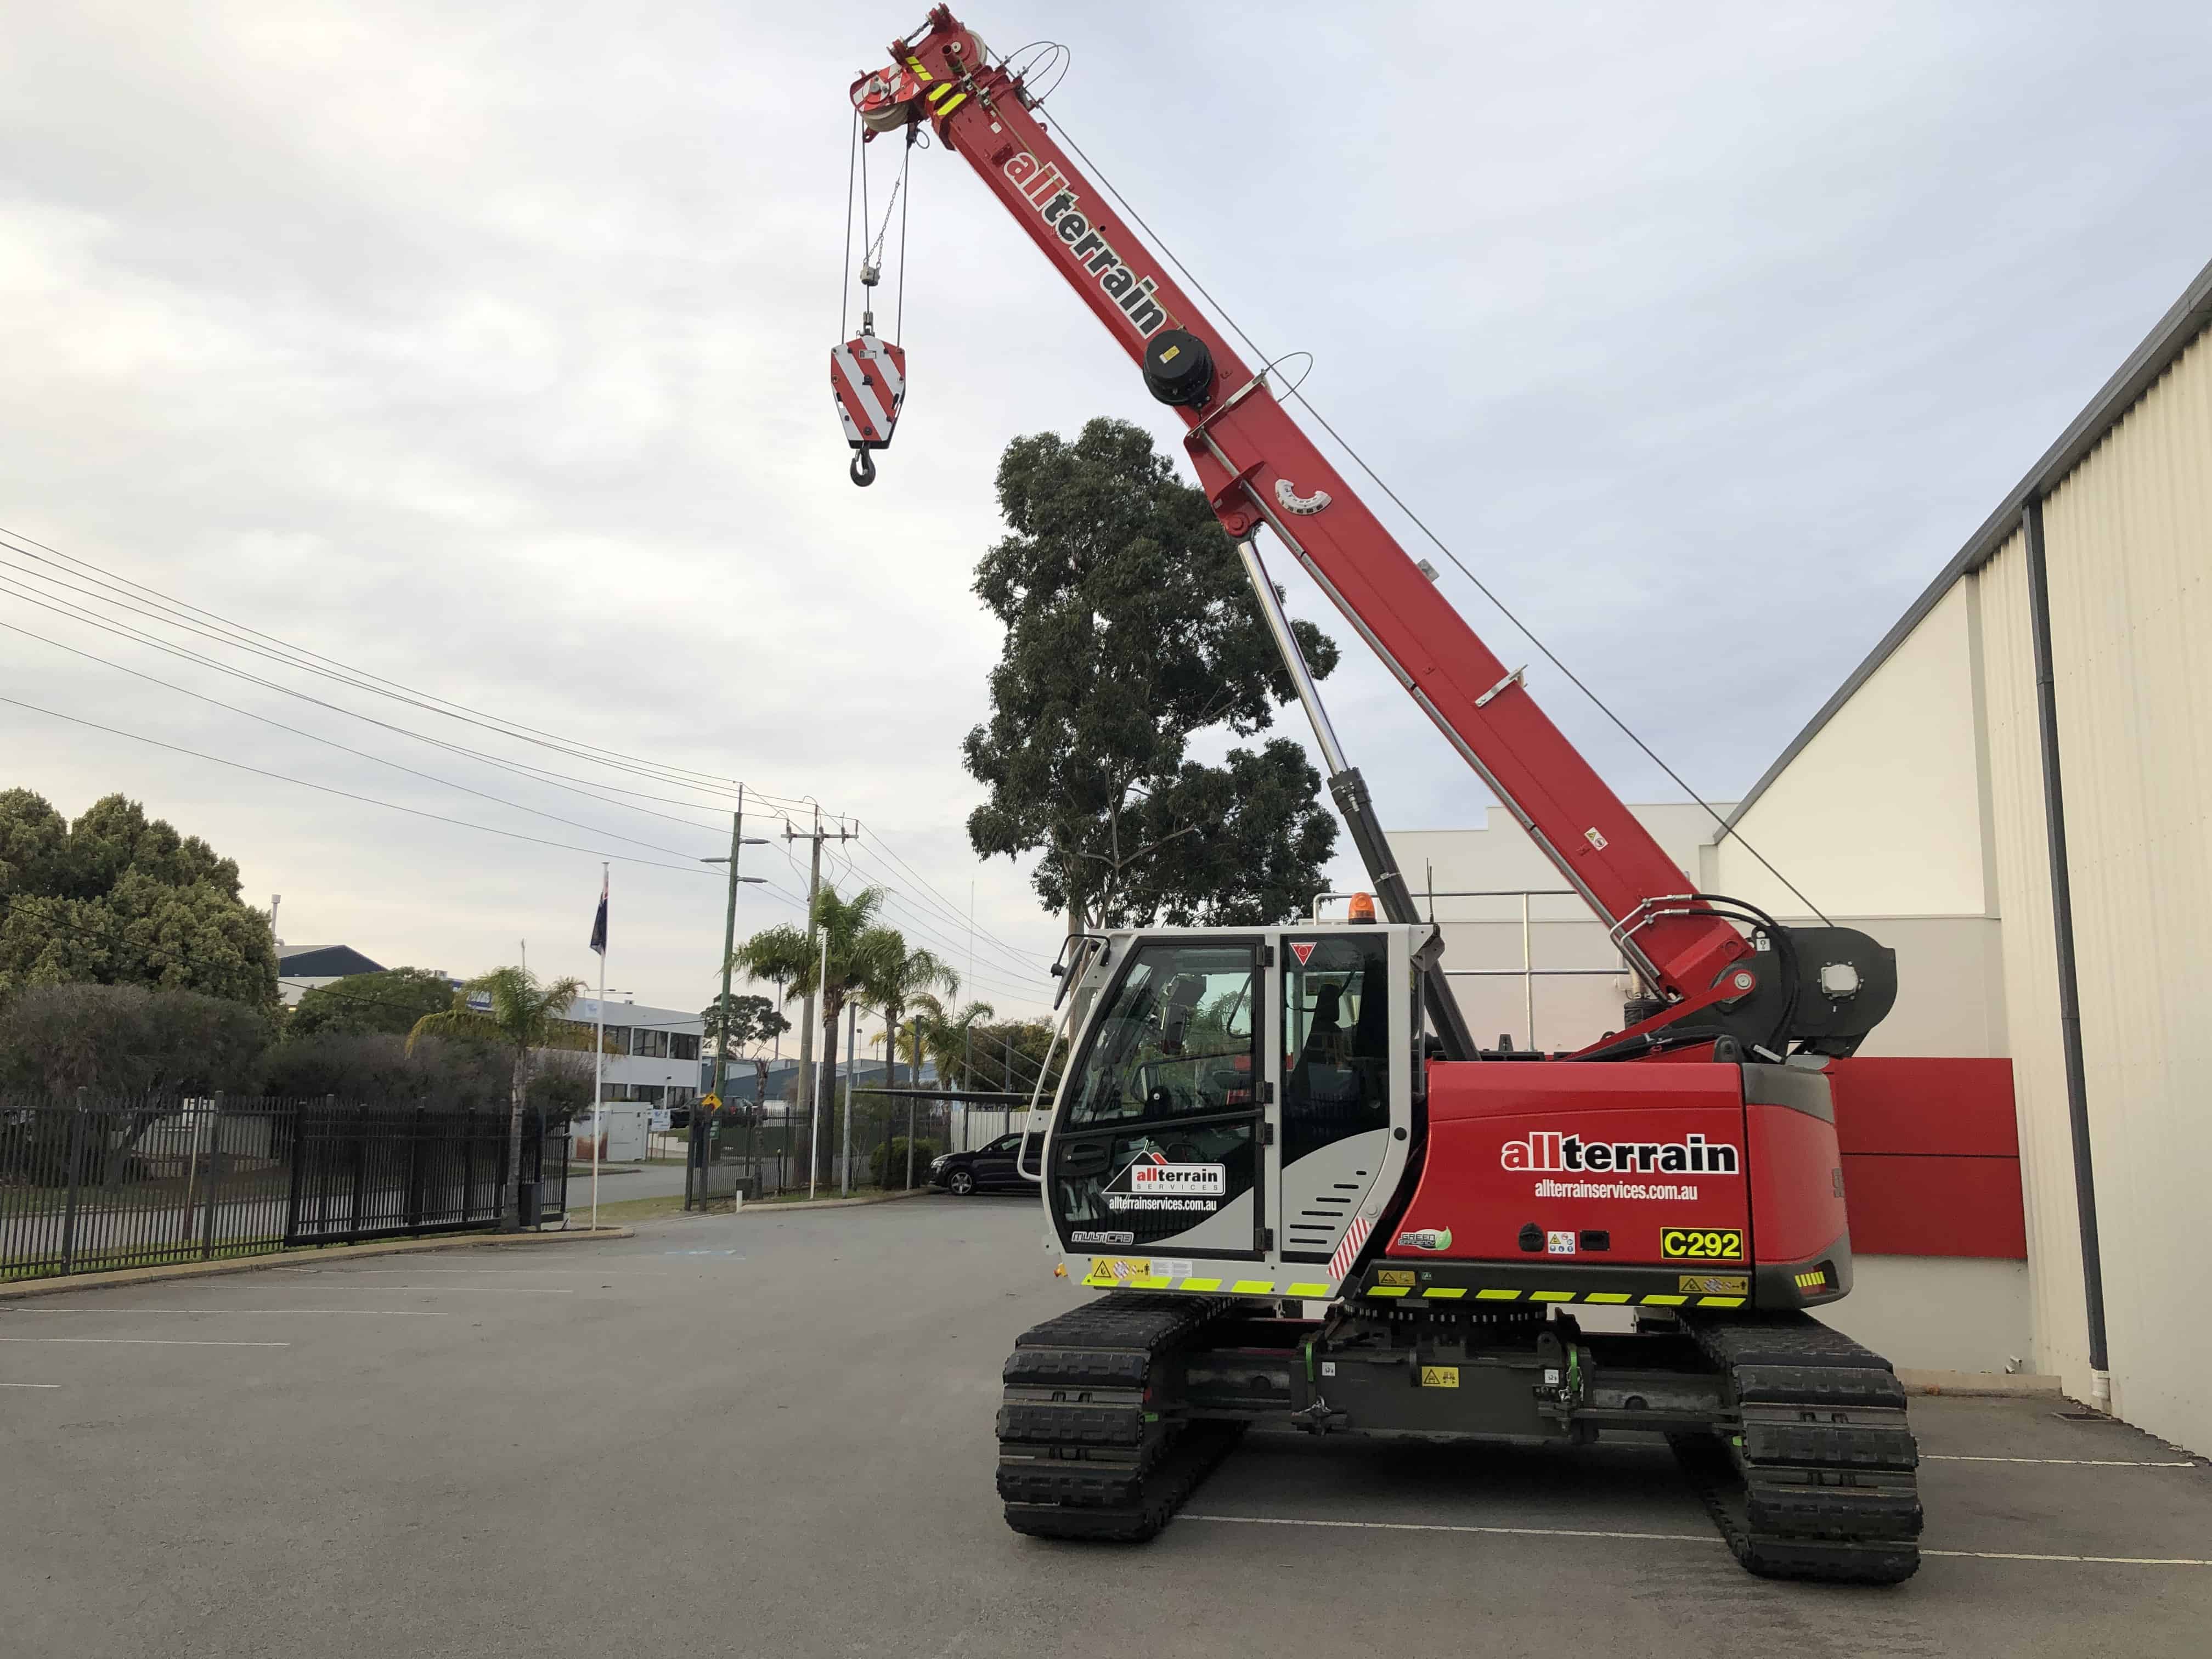 Sennebogen 613 E Crawler Crane For Sale in Perth